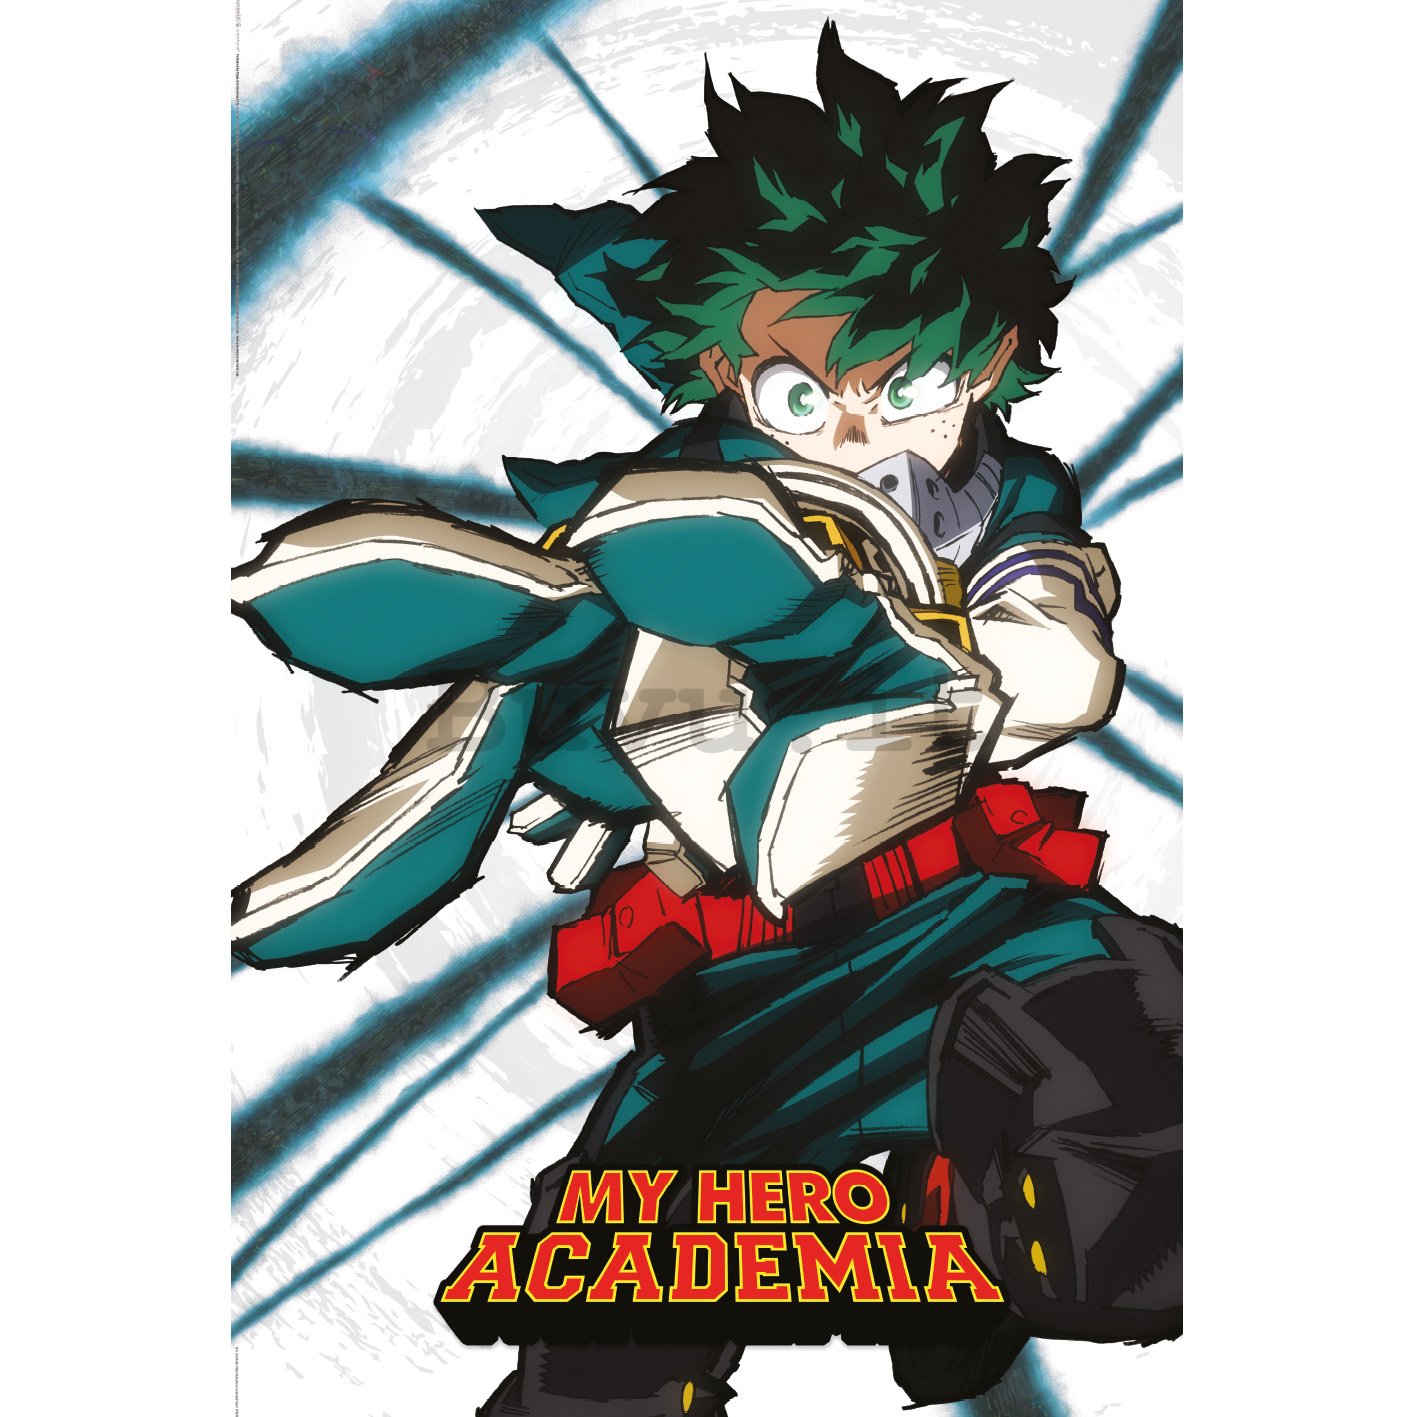 Poster - My Hero Academia S5 (Deku Power)